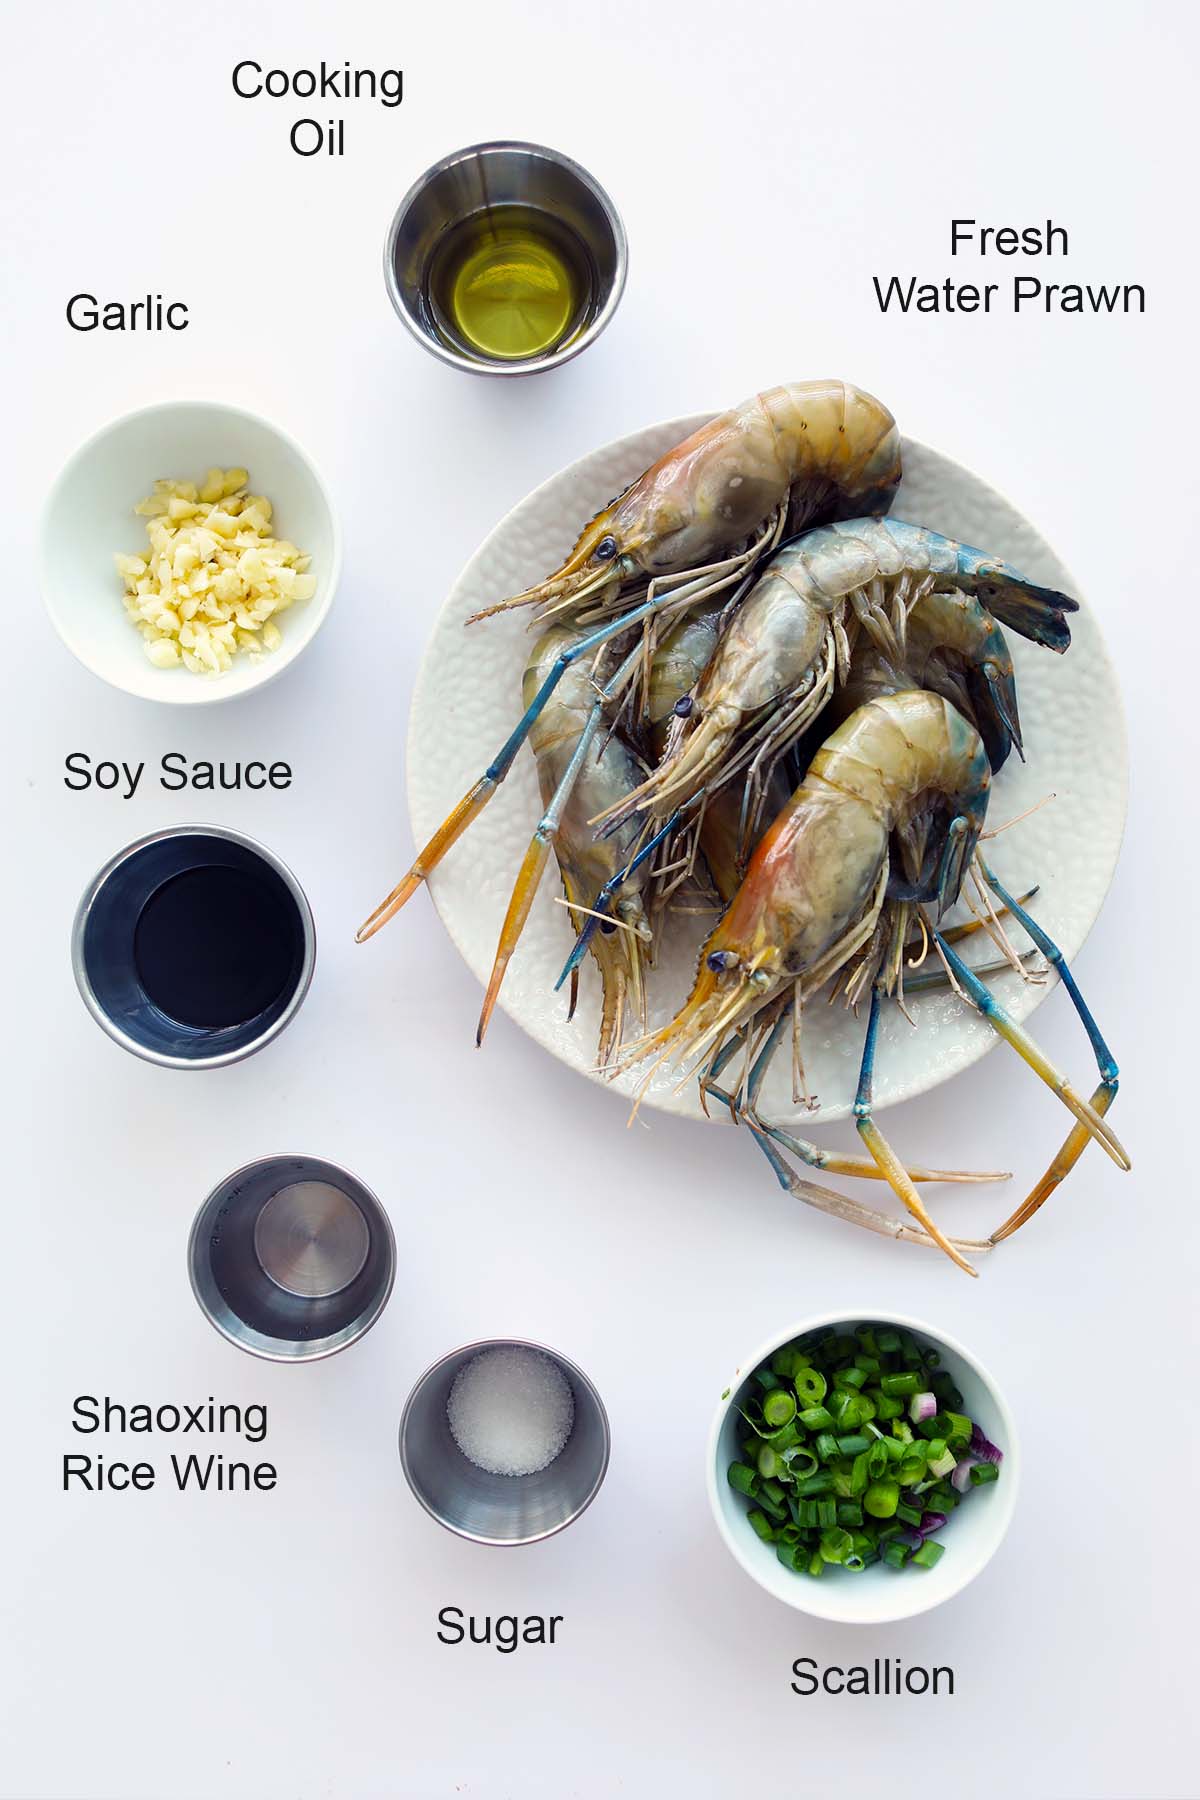 Ingredients for fresh water prawn recipe.